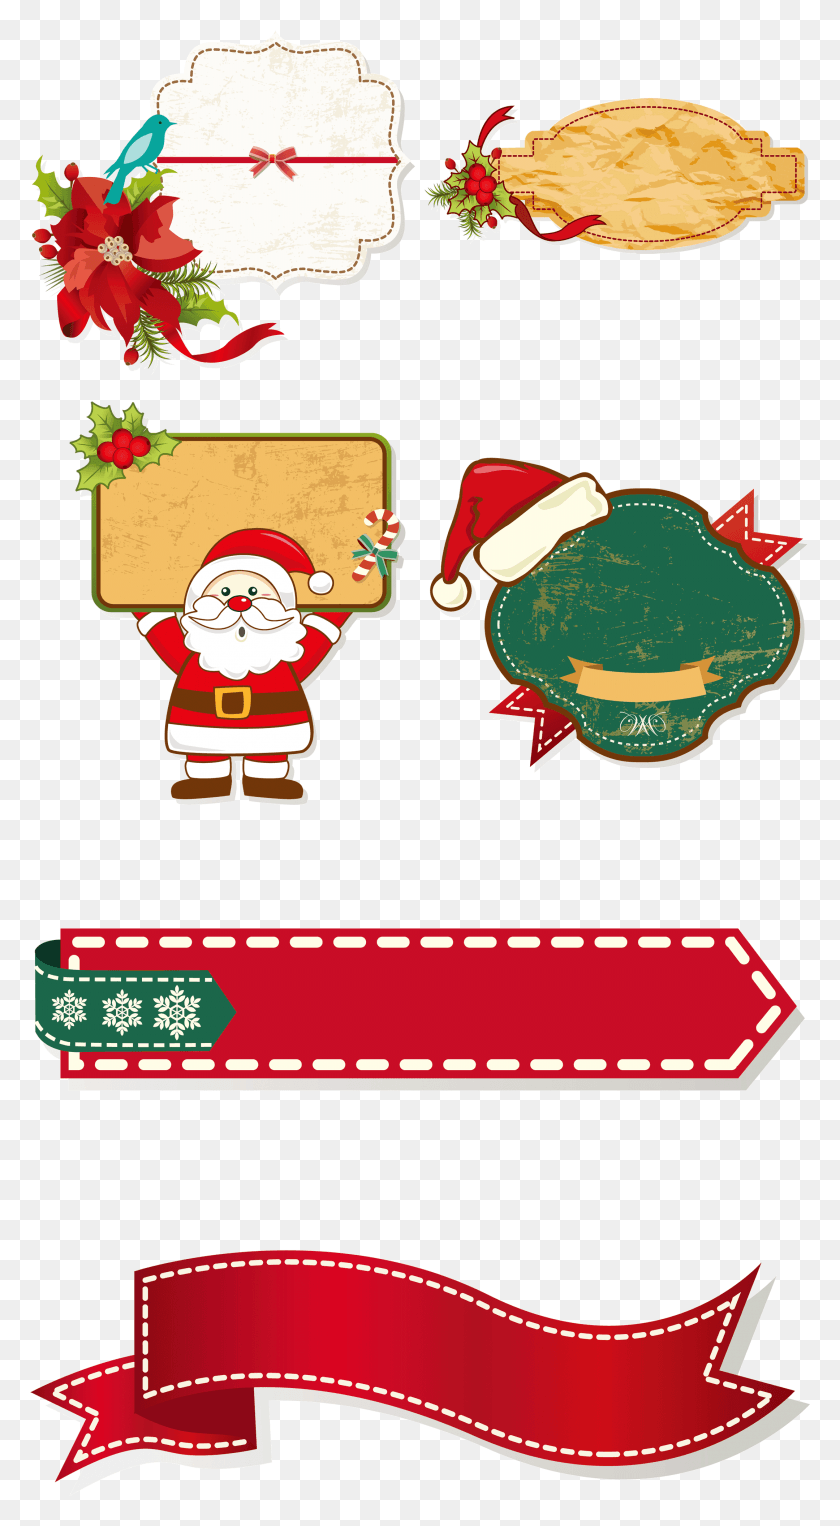 2159x4058 Descargar Png / Decoración De Navidad De Claus, Colección De Dibujos Animados, Bordes De Santa Claus, Navidad, Super Mario Hd Png